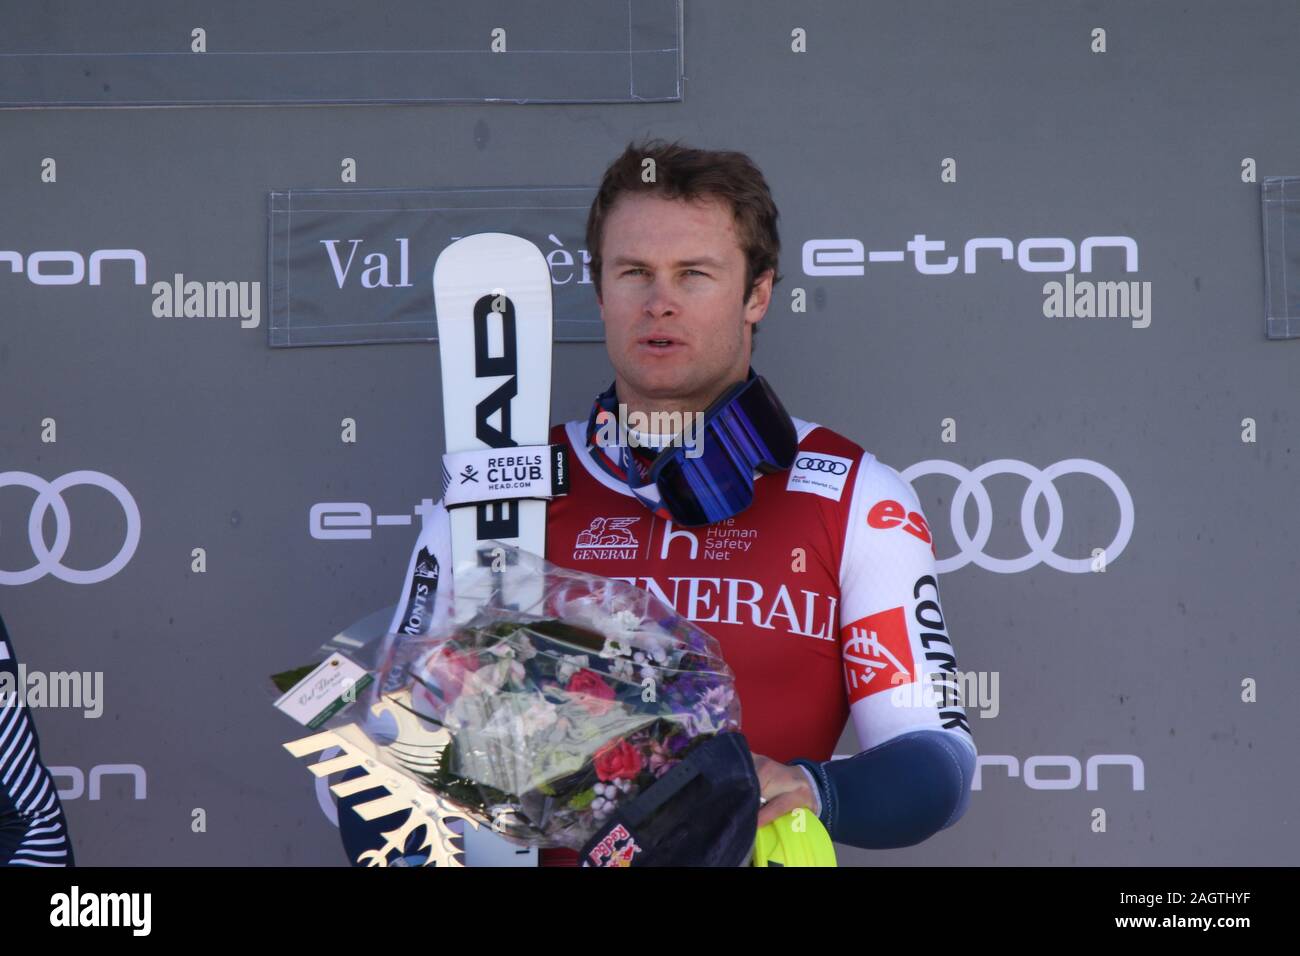 Alexis Pinturault skieur alpin de Courchevel France sur le podium de la coupe du monde de ski Audi FIS Val d'Isère 2019 Banque D'Images